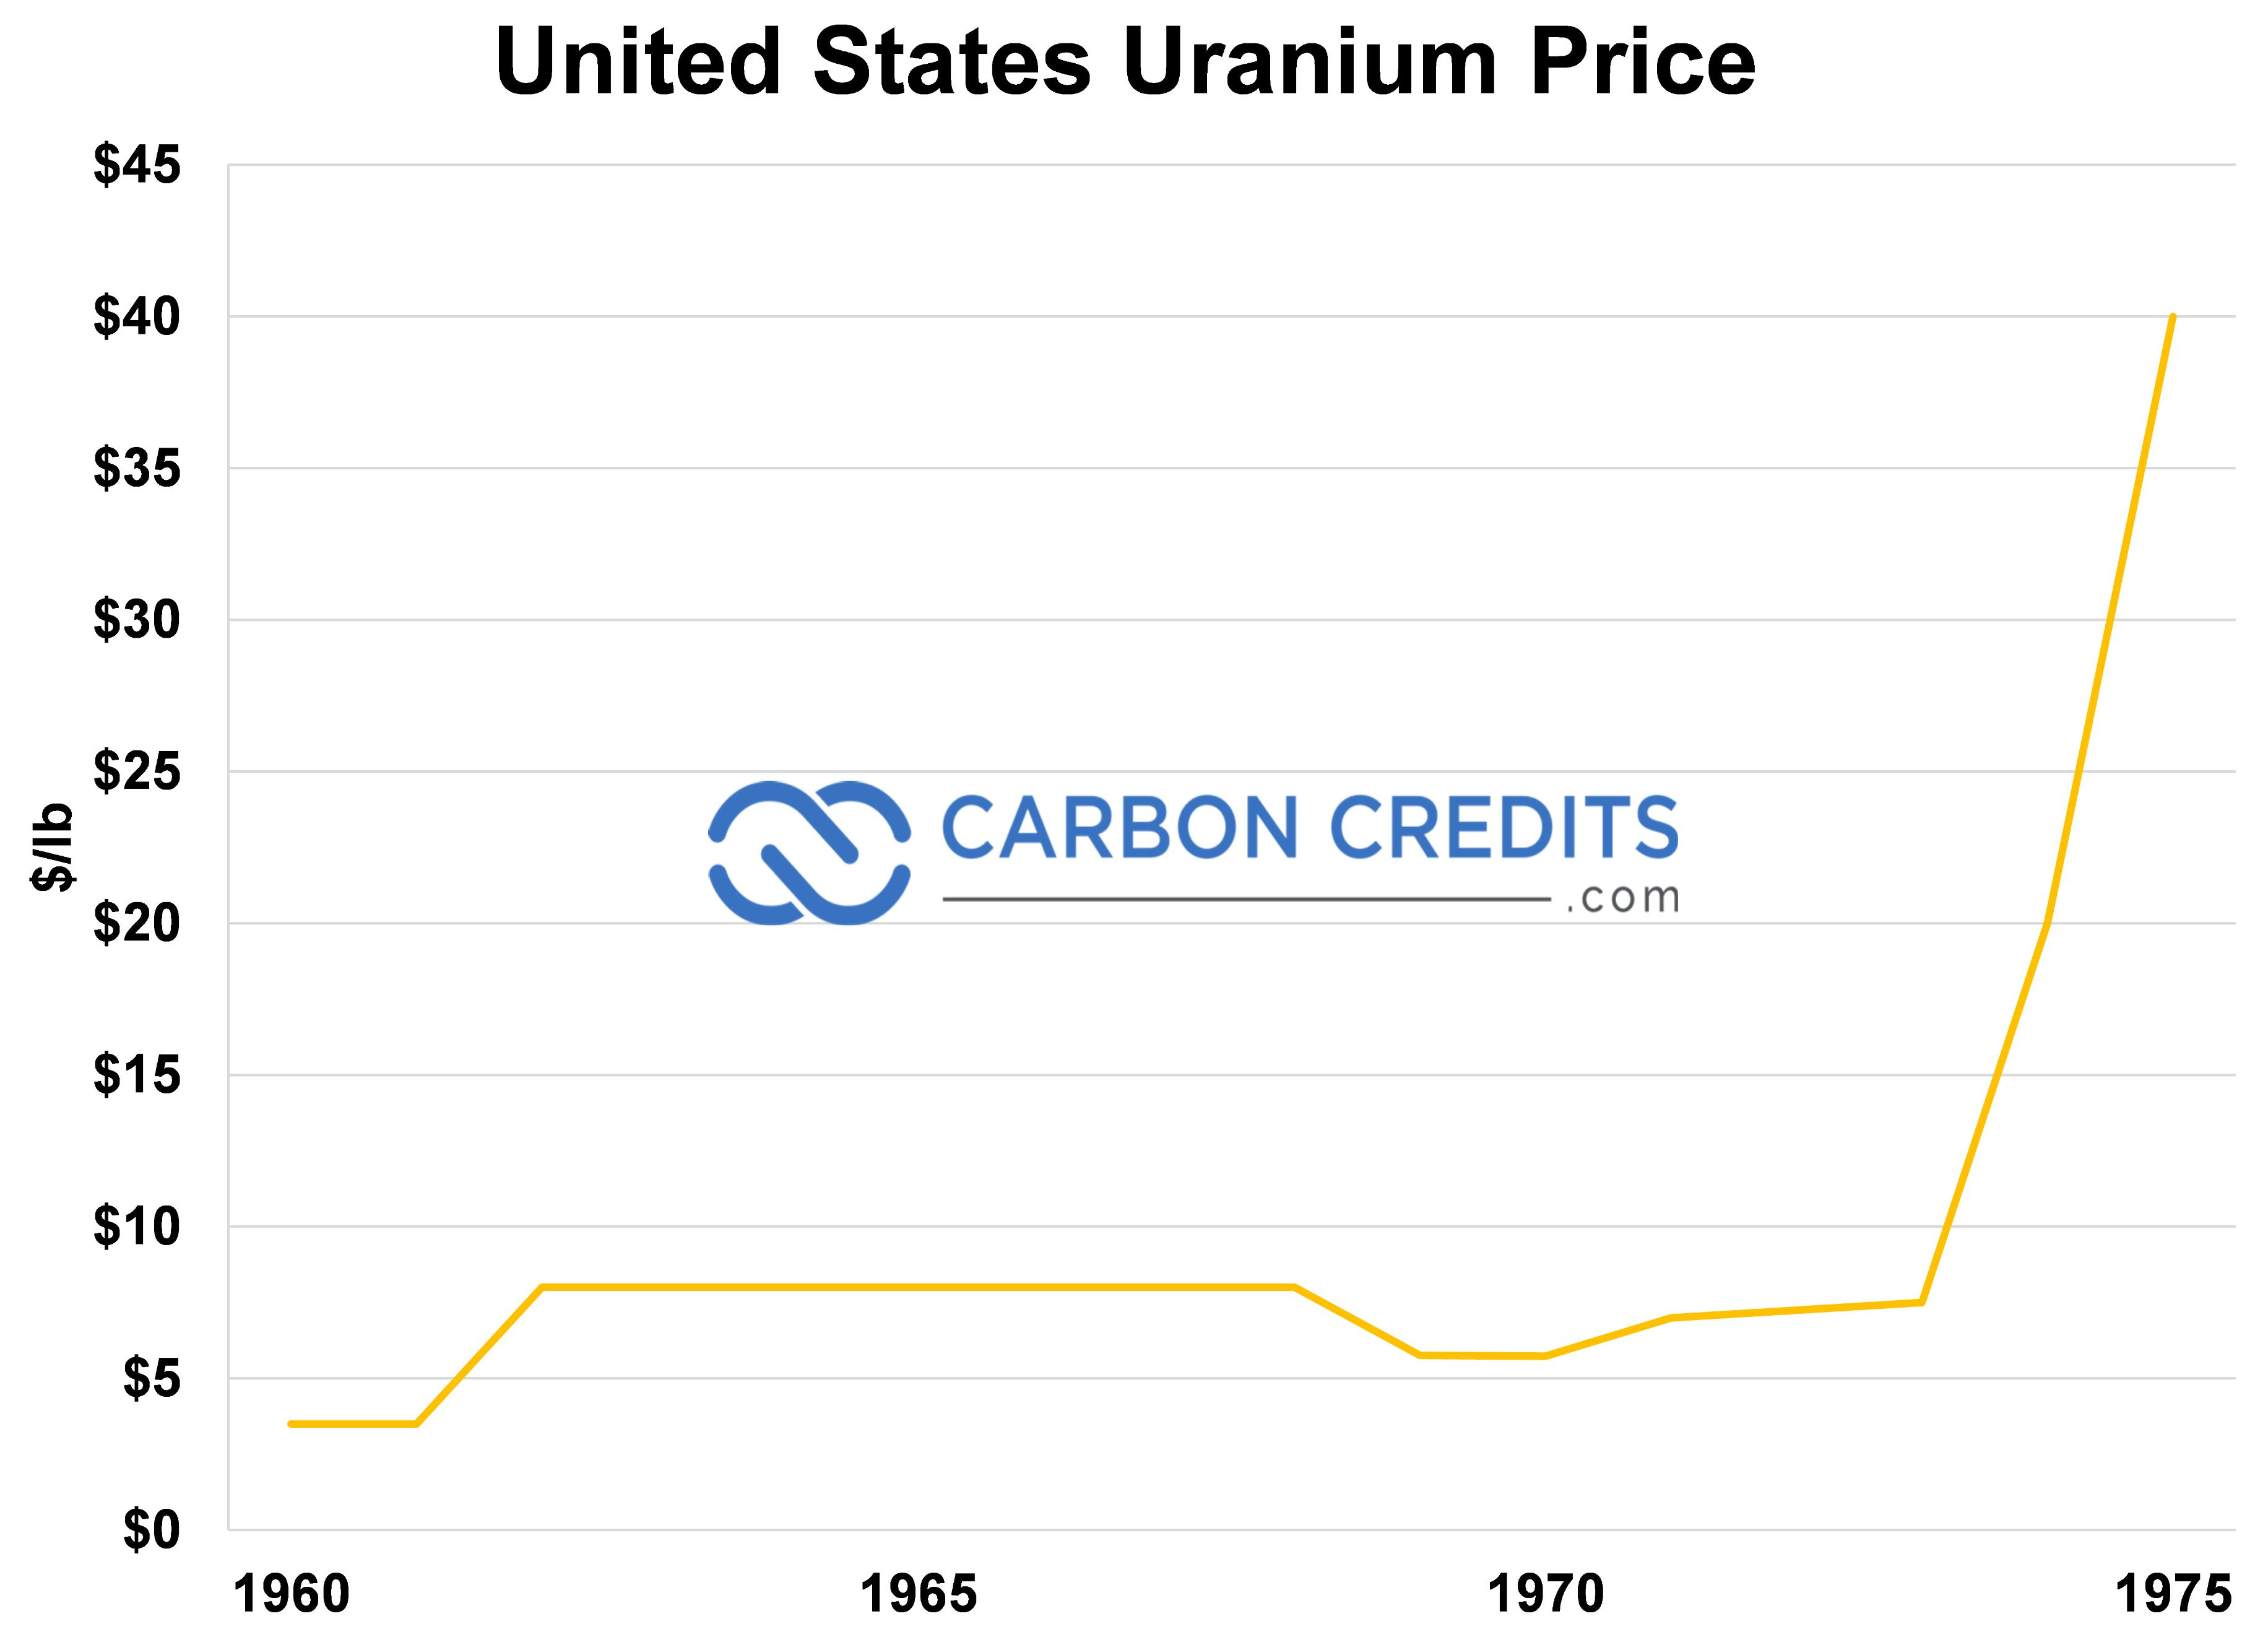 ett linjediagram som visar priset på koldioxidkrediter och USA:s uranpris